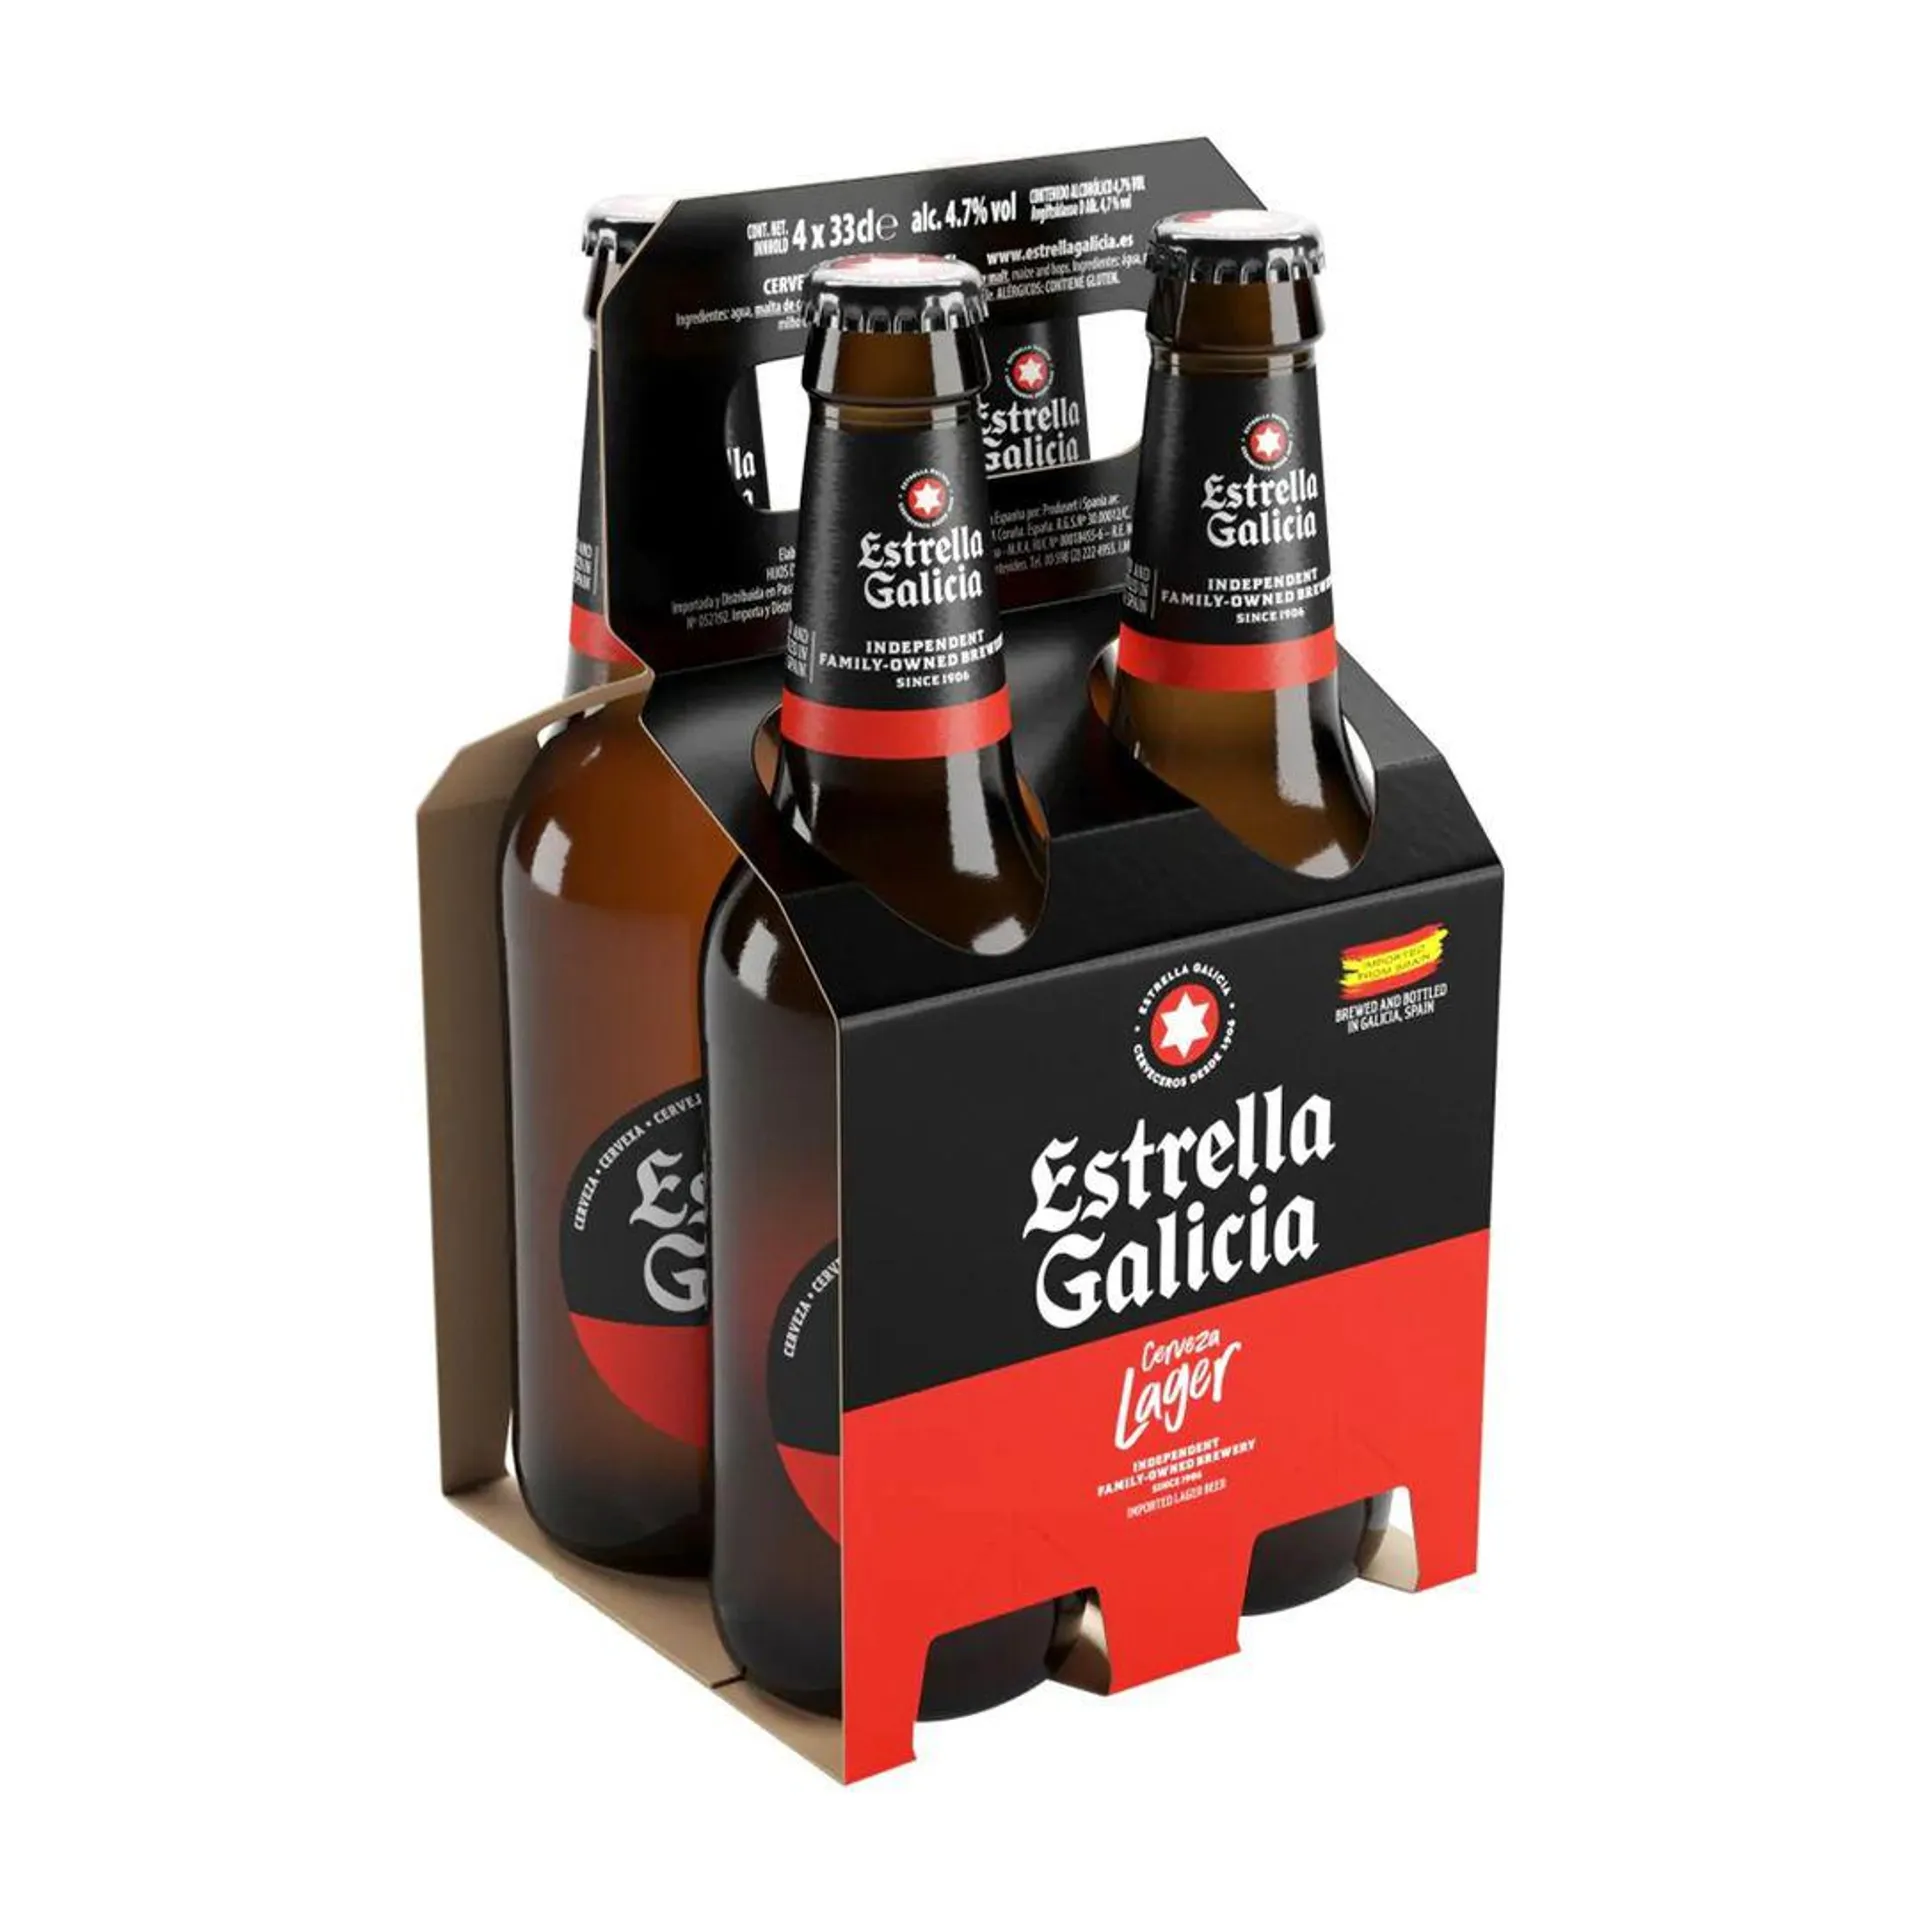 Pack 4 Uds Cerveza Estrella Galicia Premium Lager Botella 330ml